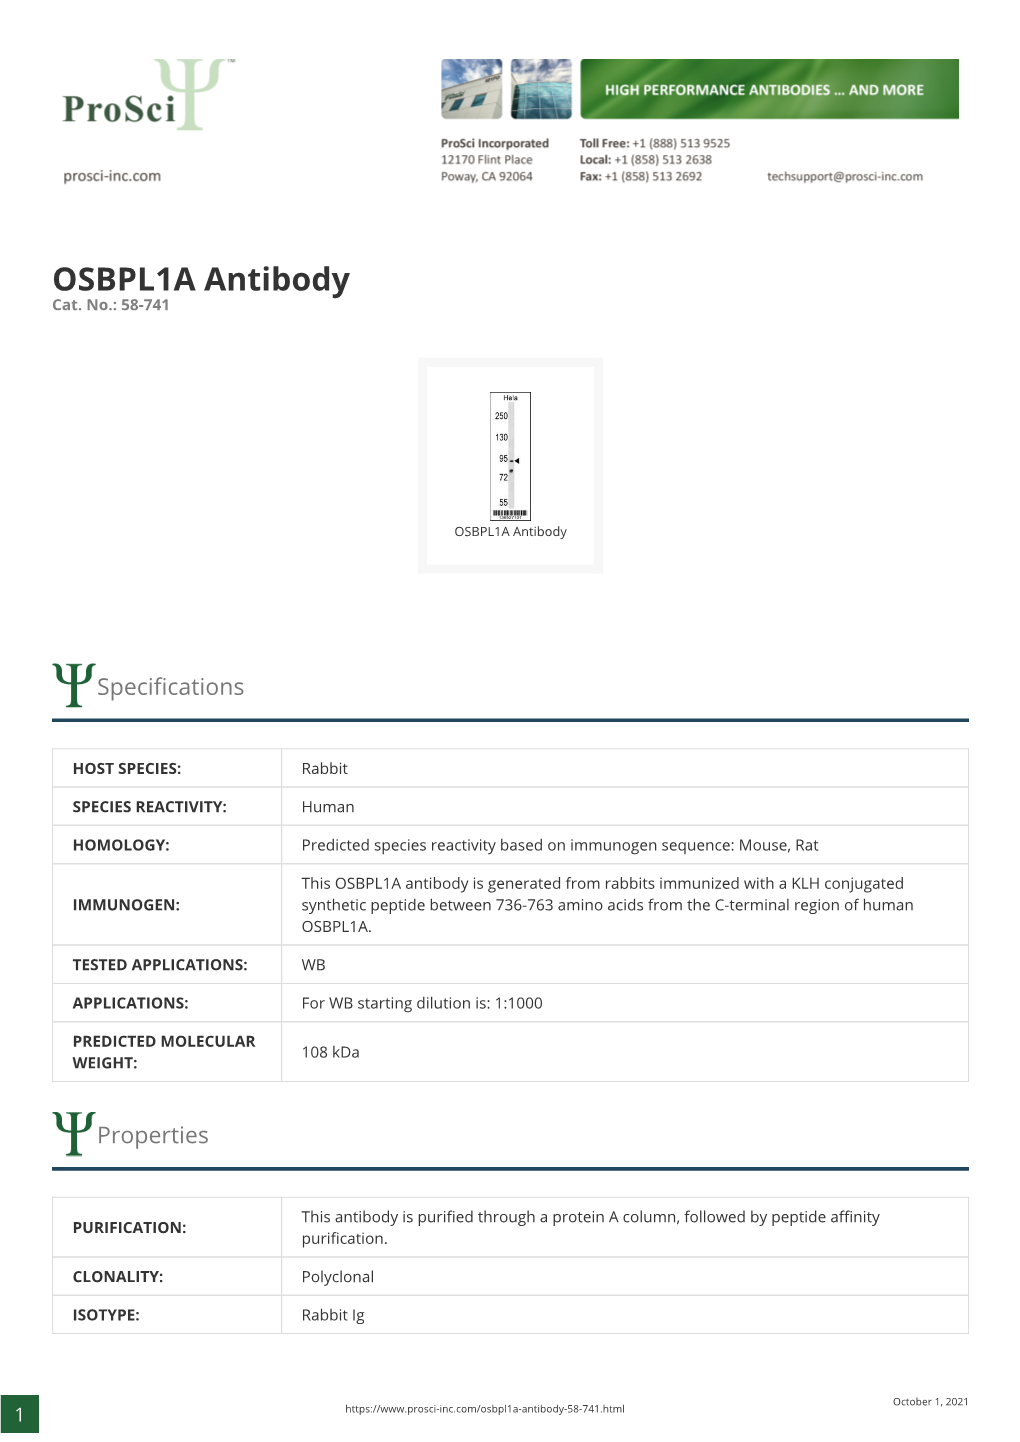 OSBPL1A Antibody Cat